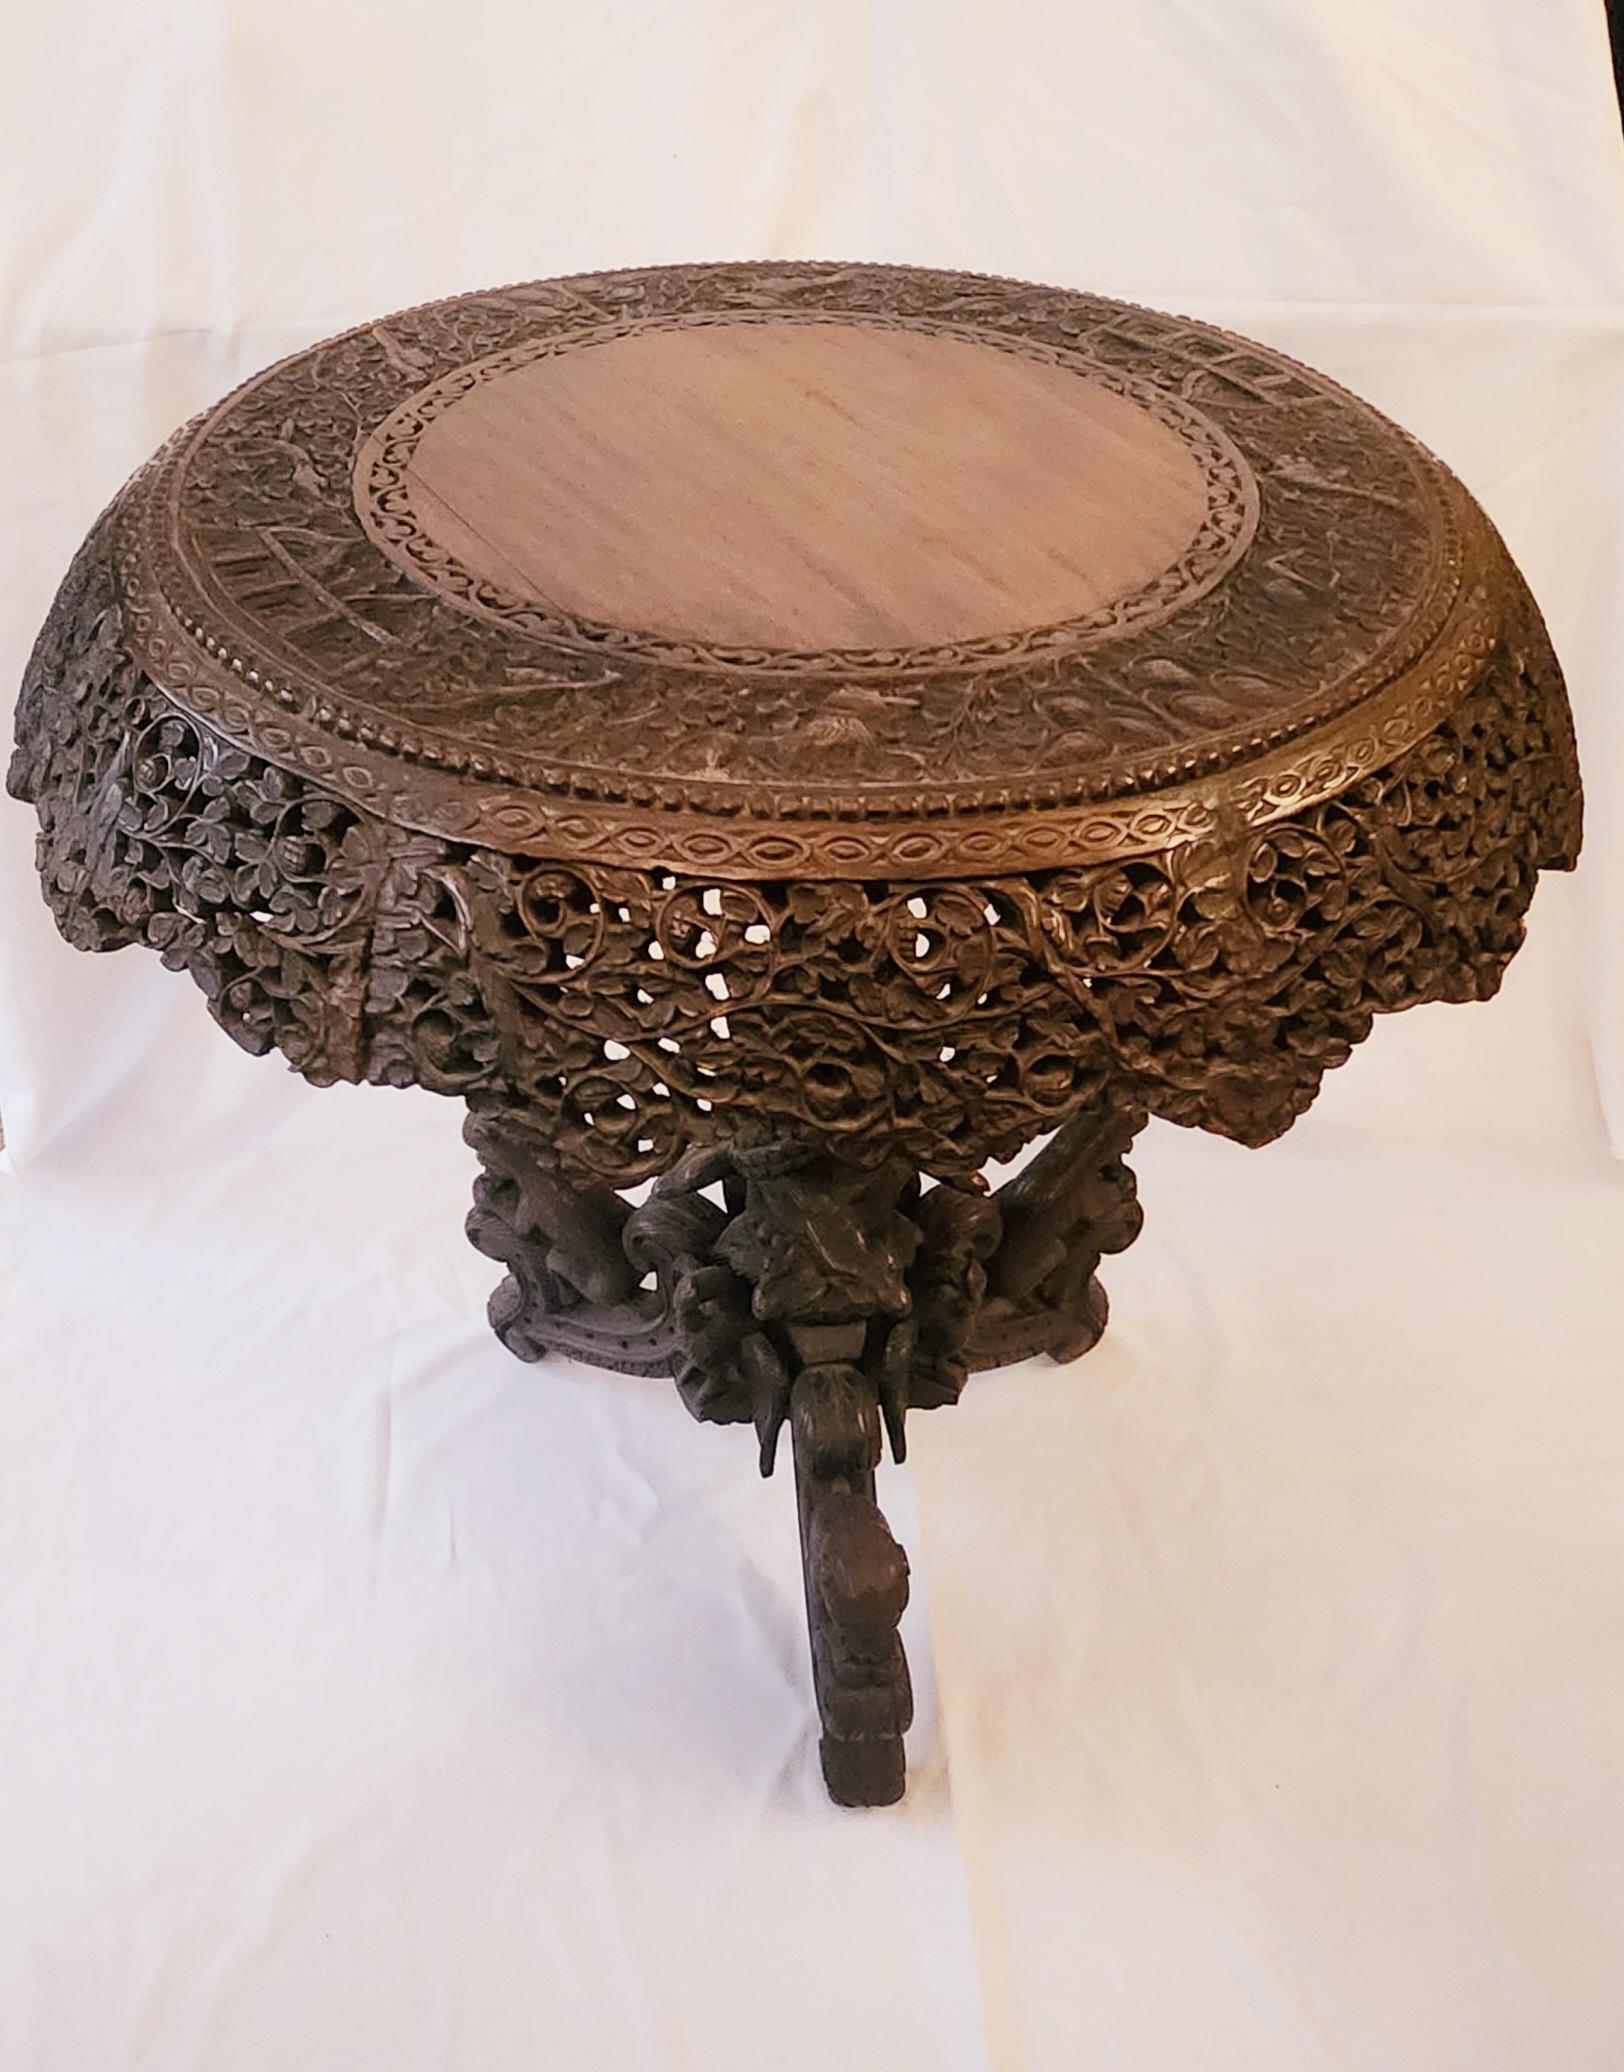 Cette ancienne table centrale en bois de rose sculpté anglo-indien du XIXe siècle est un véritable chef-d'œuvre. Il se caractérise par un savoir-faire artisanal exquis et des détails complexes, illustrant la riche fusion culturelle des influences